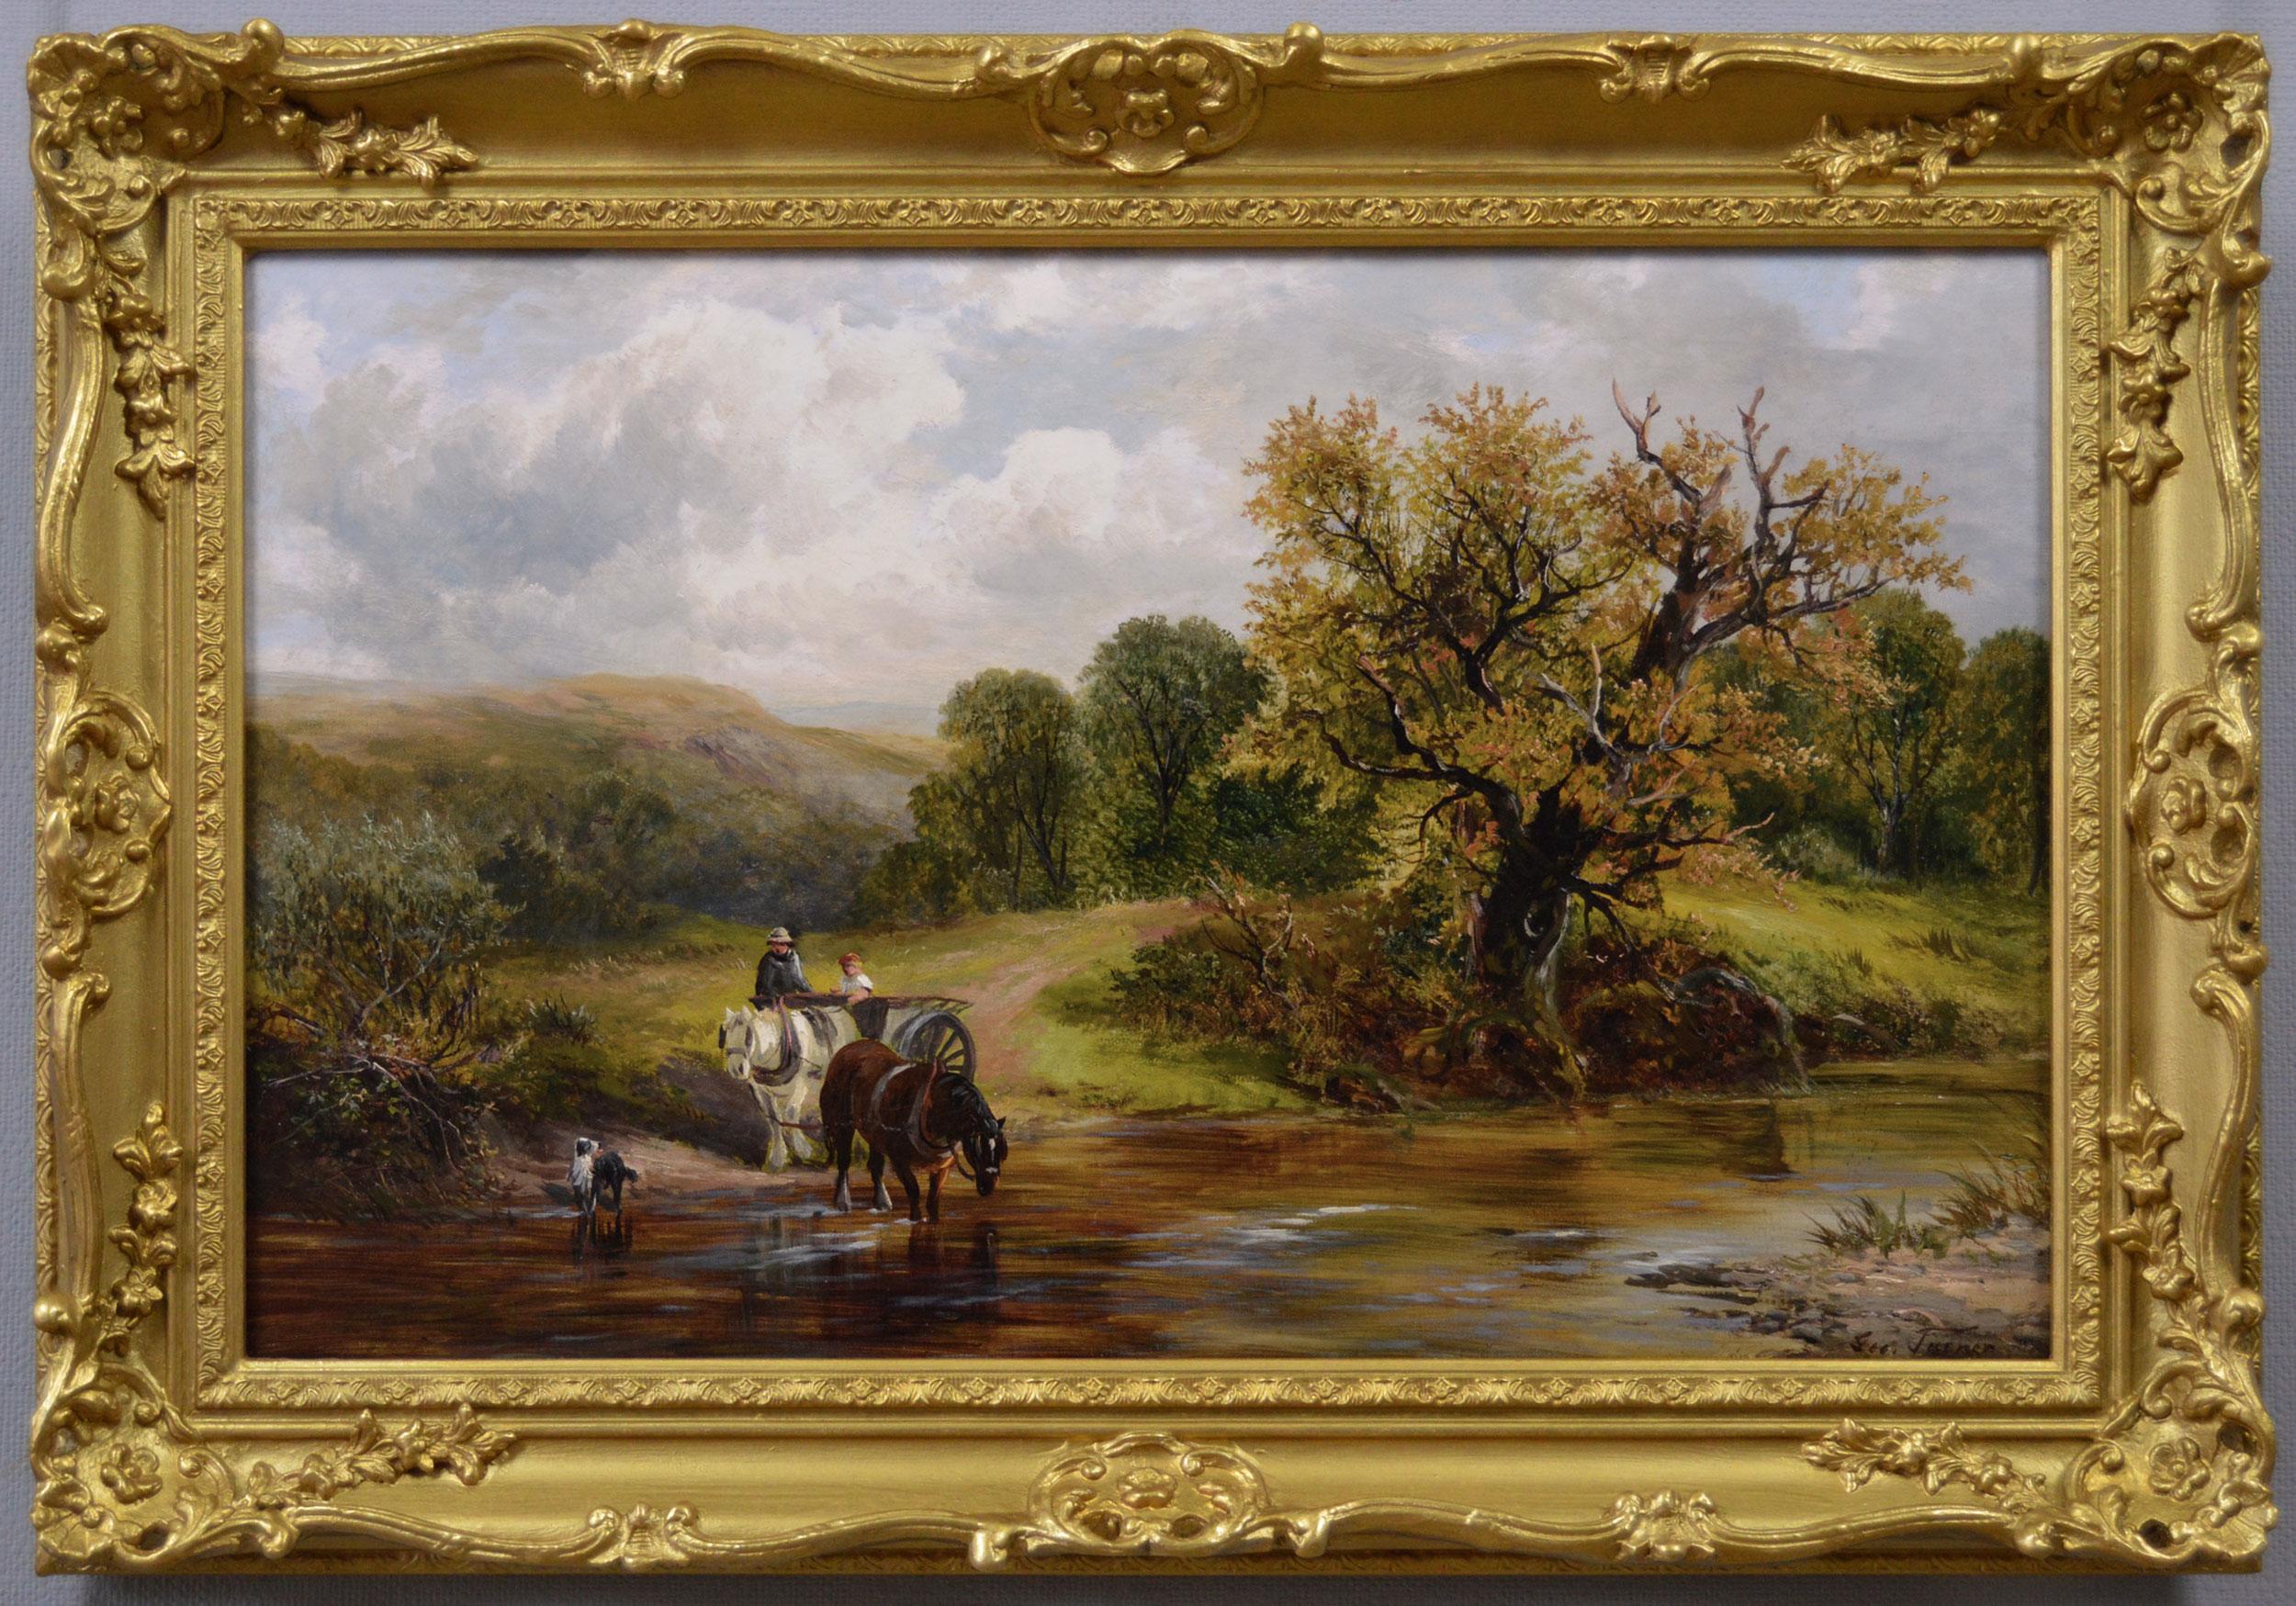 Landscape Painting George Turner - Peinture à l'huile du 19e siècle représentant des personnages avec un cheval et un chariot franchissant un gué